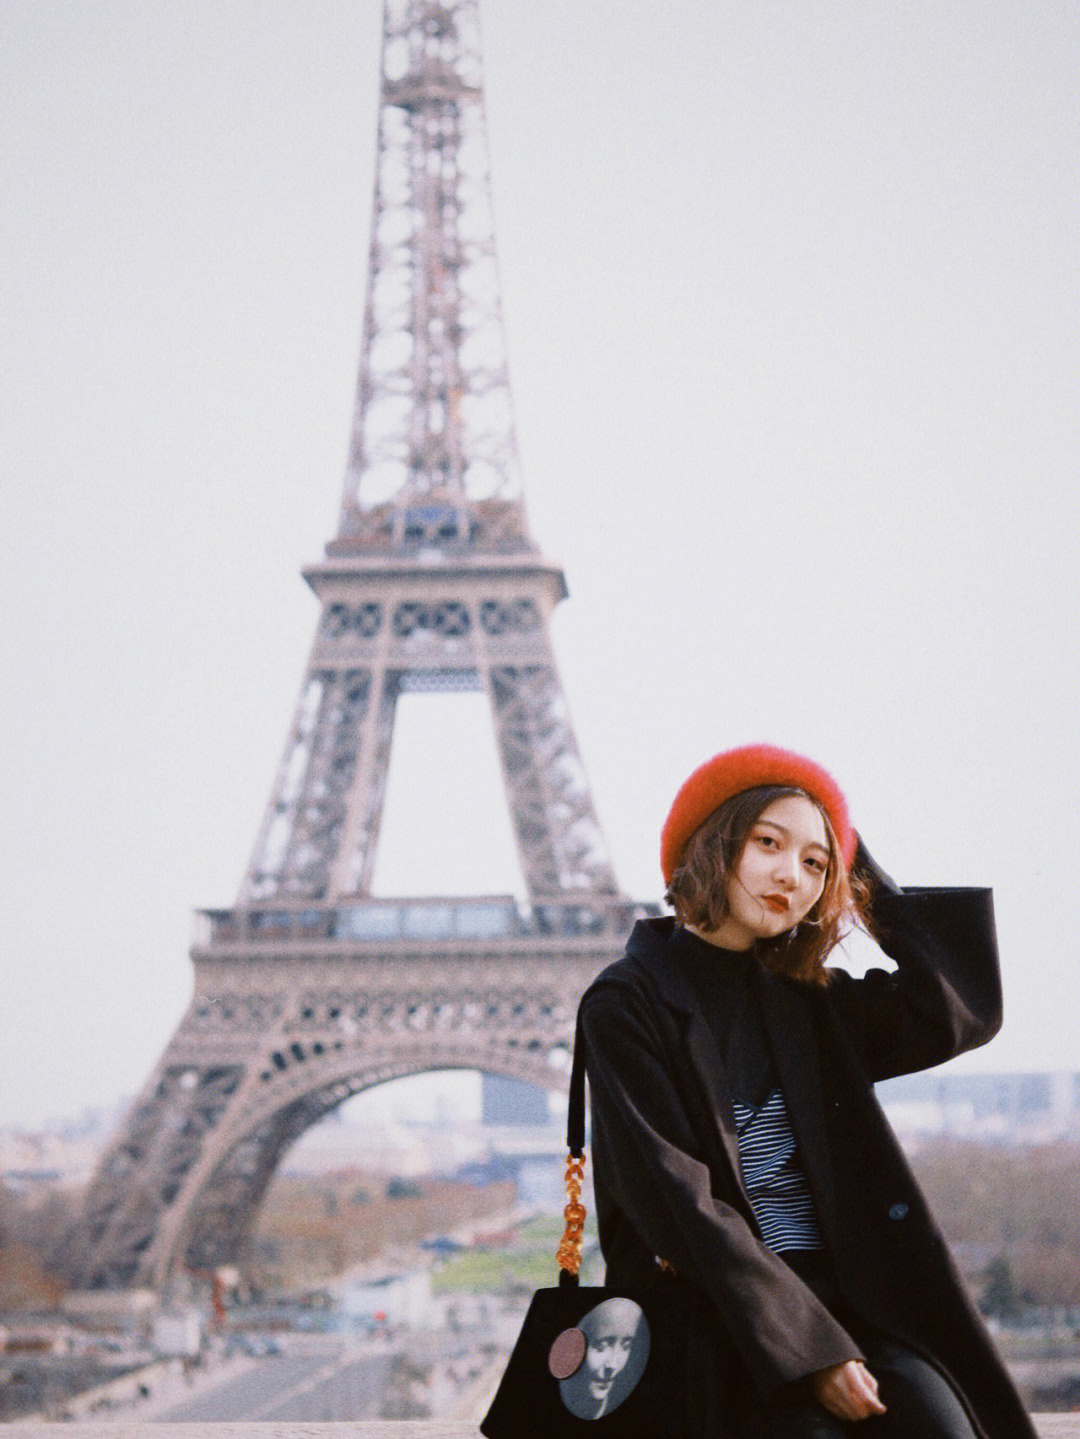 巴黎铁塔游客照图片